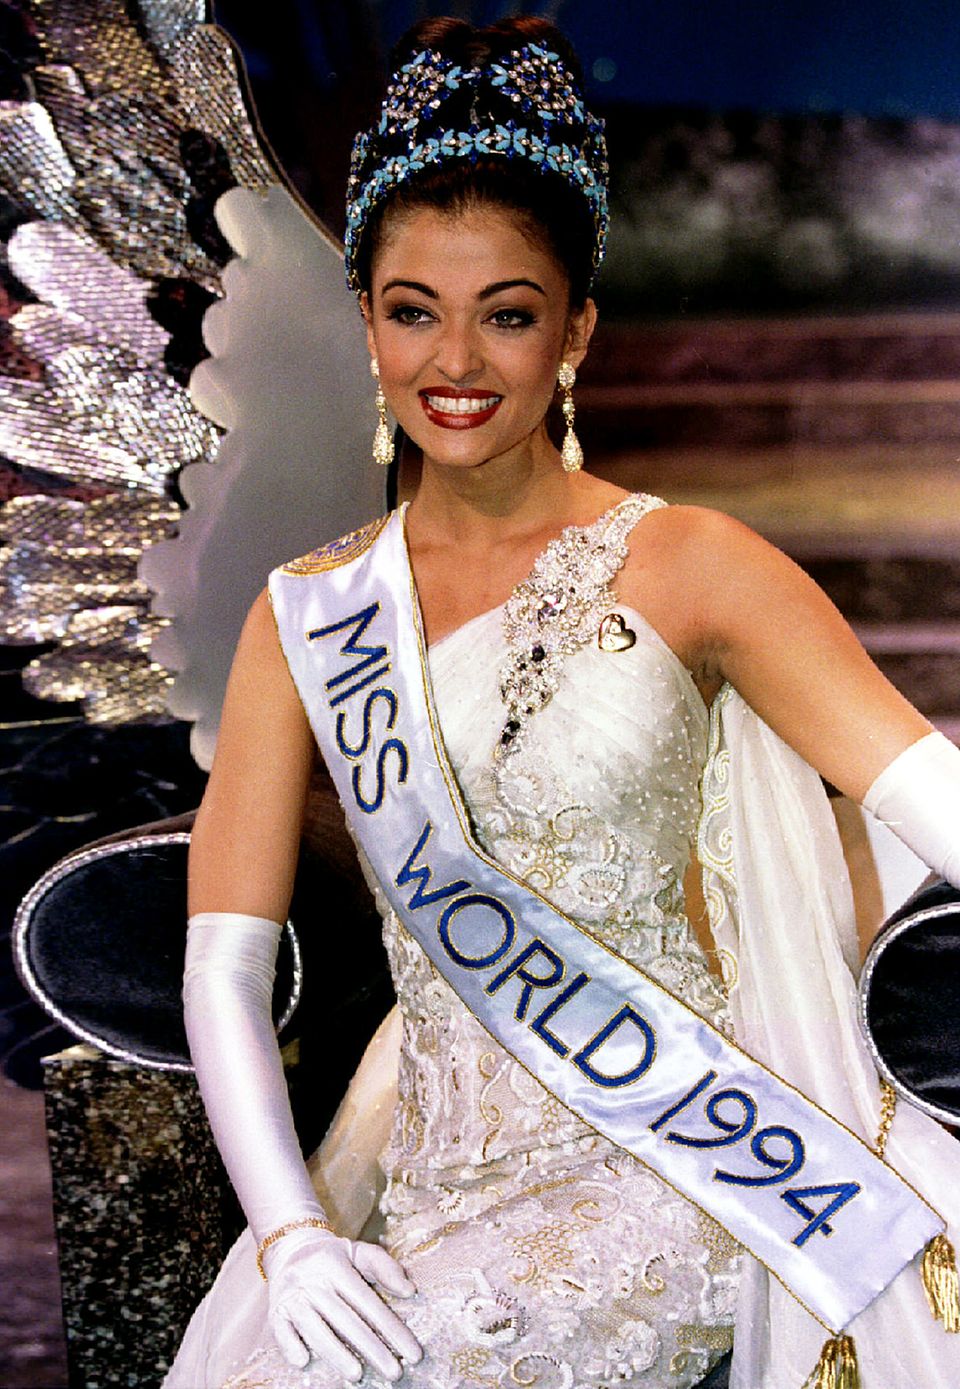 Nach dem Titel der "Miss India" konnte sich Aishwarya Rai dann 1994 auch die blaue Krone der "MIss World" aufsetzen. Kein Wunder bei diesem bildschönen Gesicht.